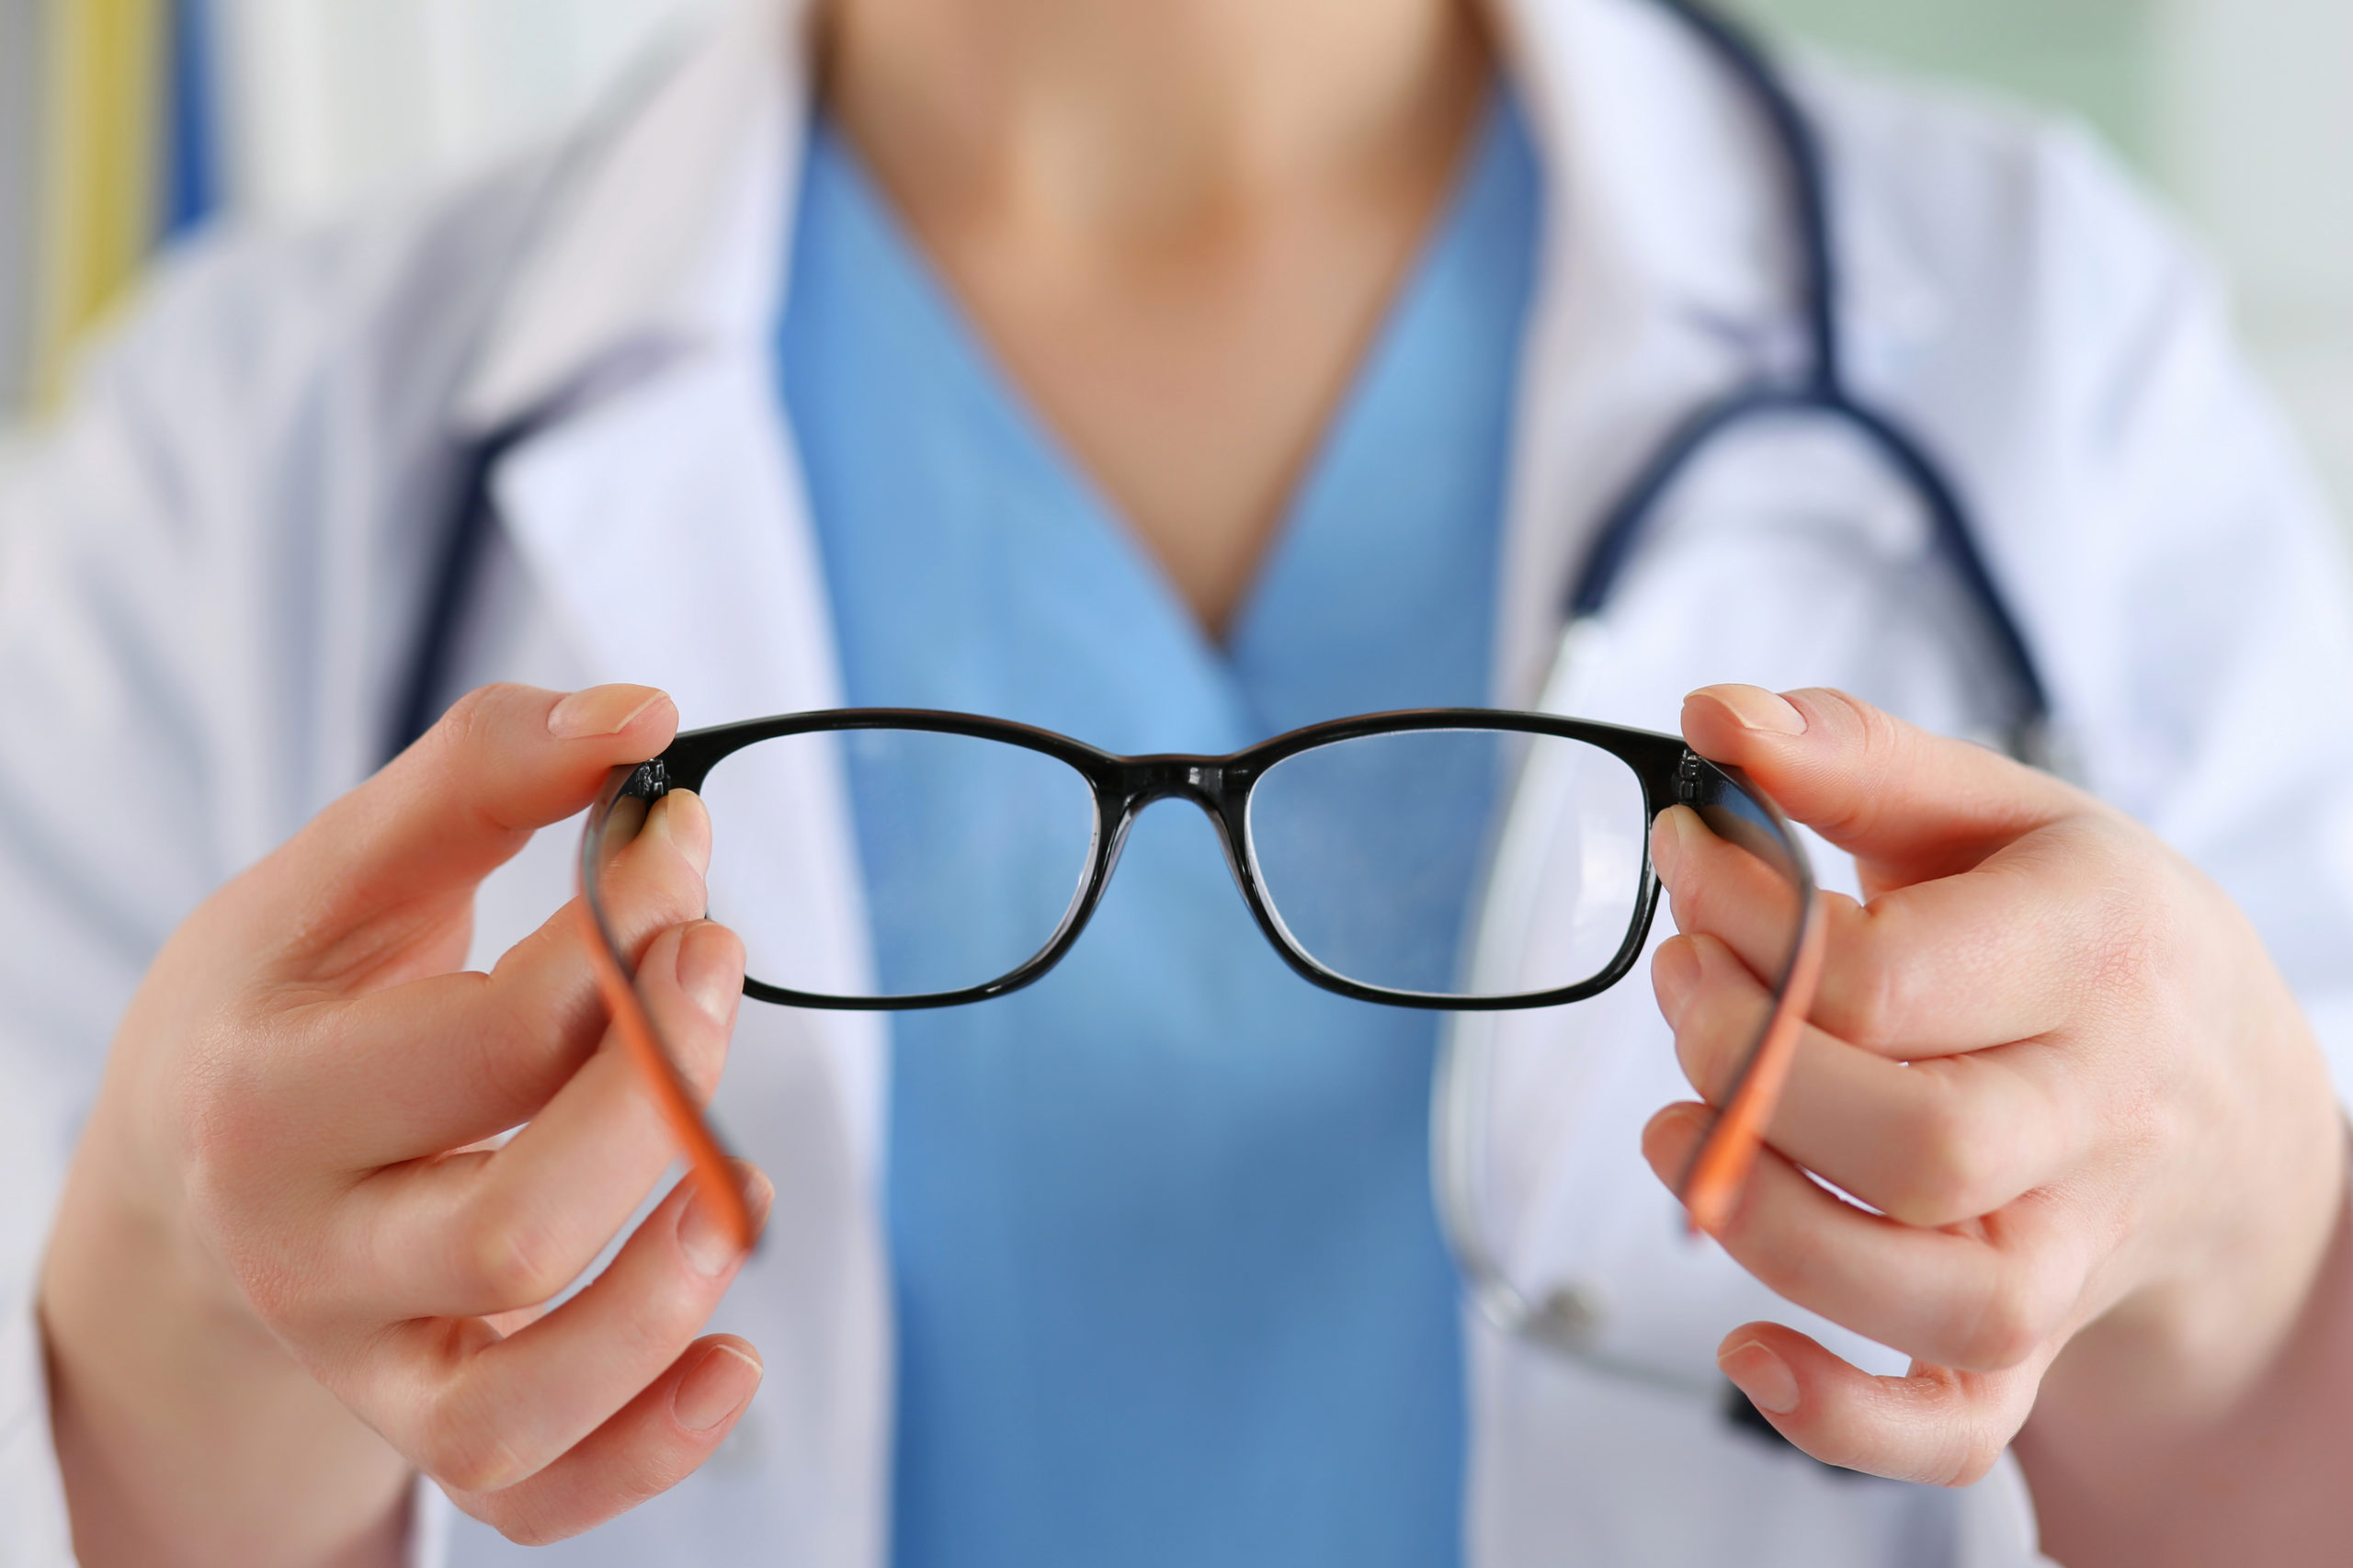 eye doctor holding glasses